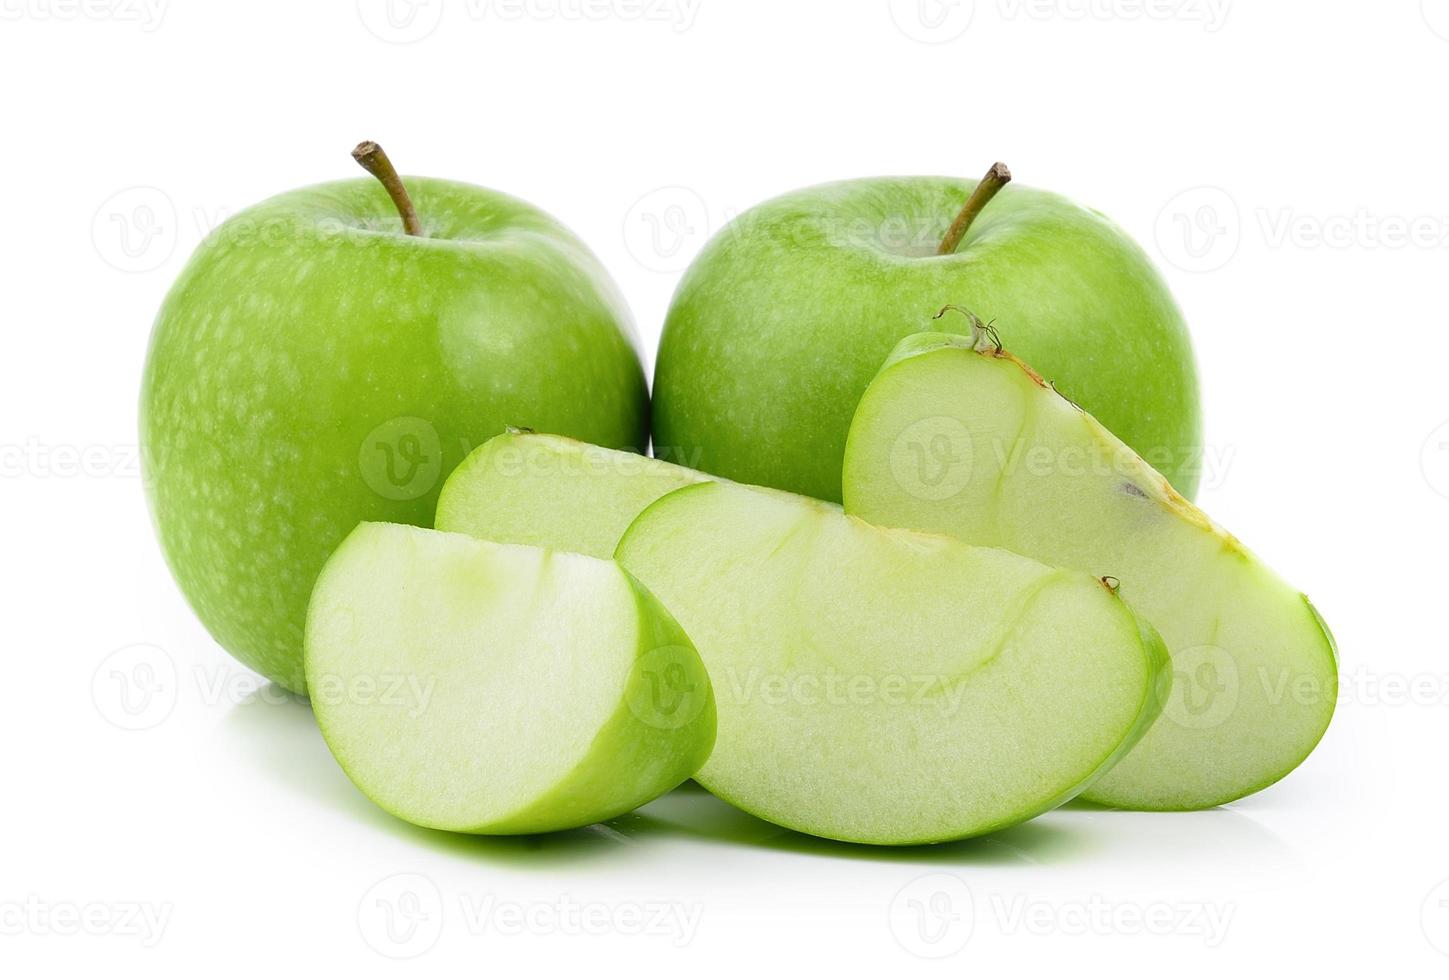 groene appel op witte achtergrond foto